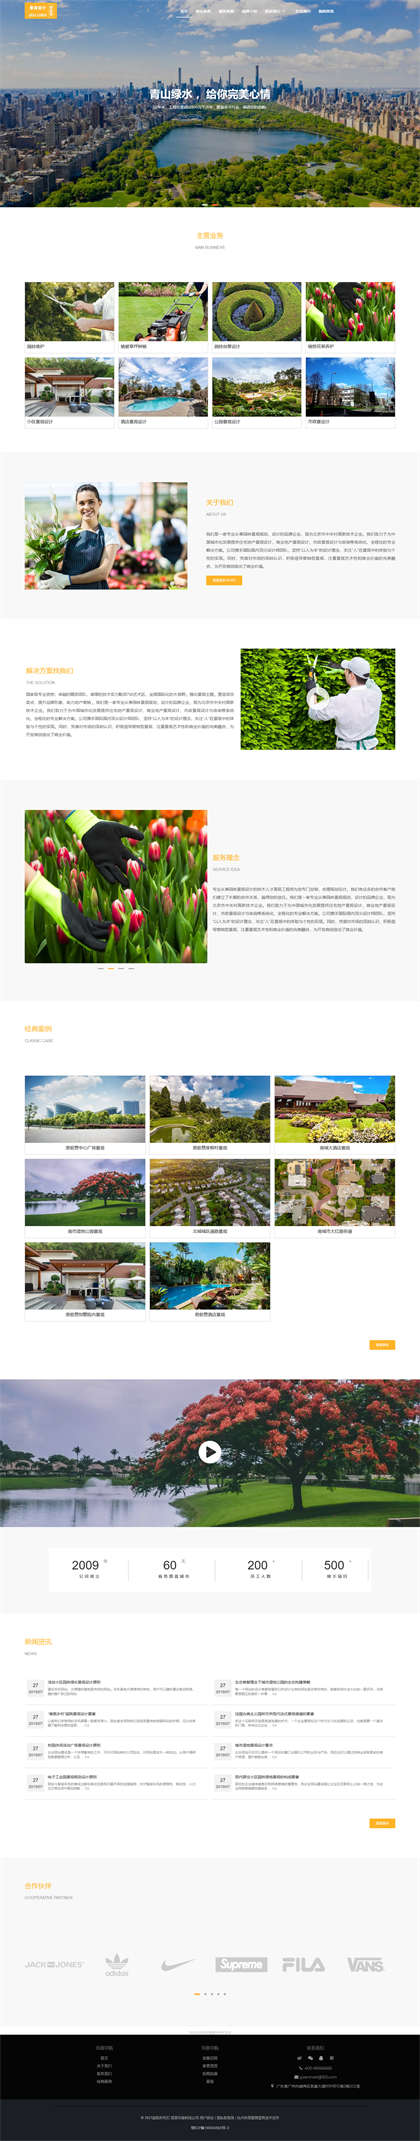 园林设计-园林维护-景观设计-园林种植-林业公司-园林公司网站模板网站模板图片